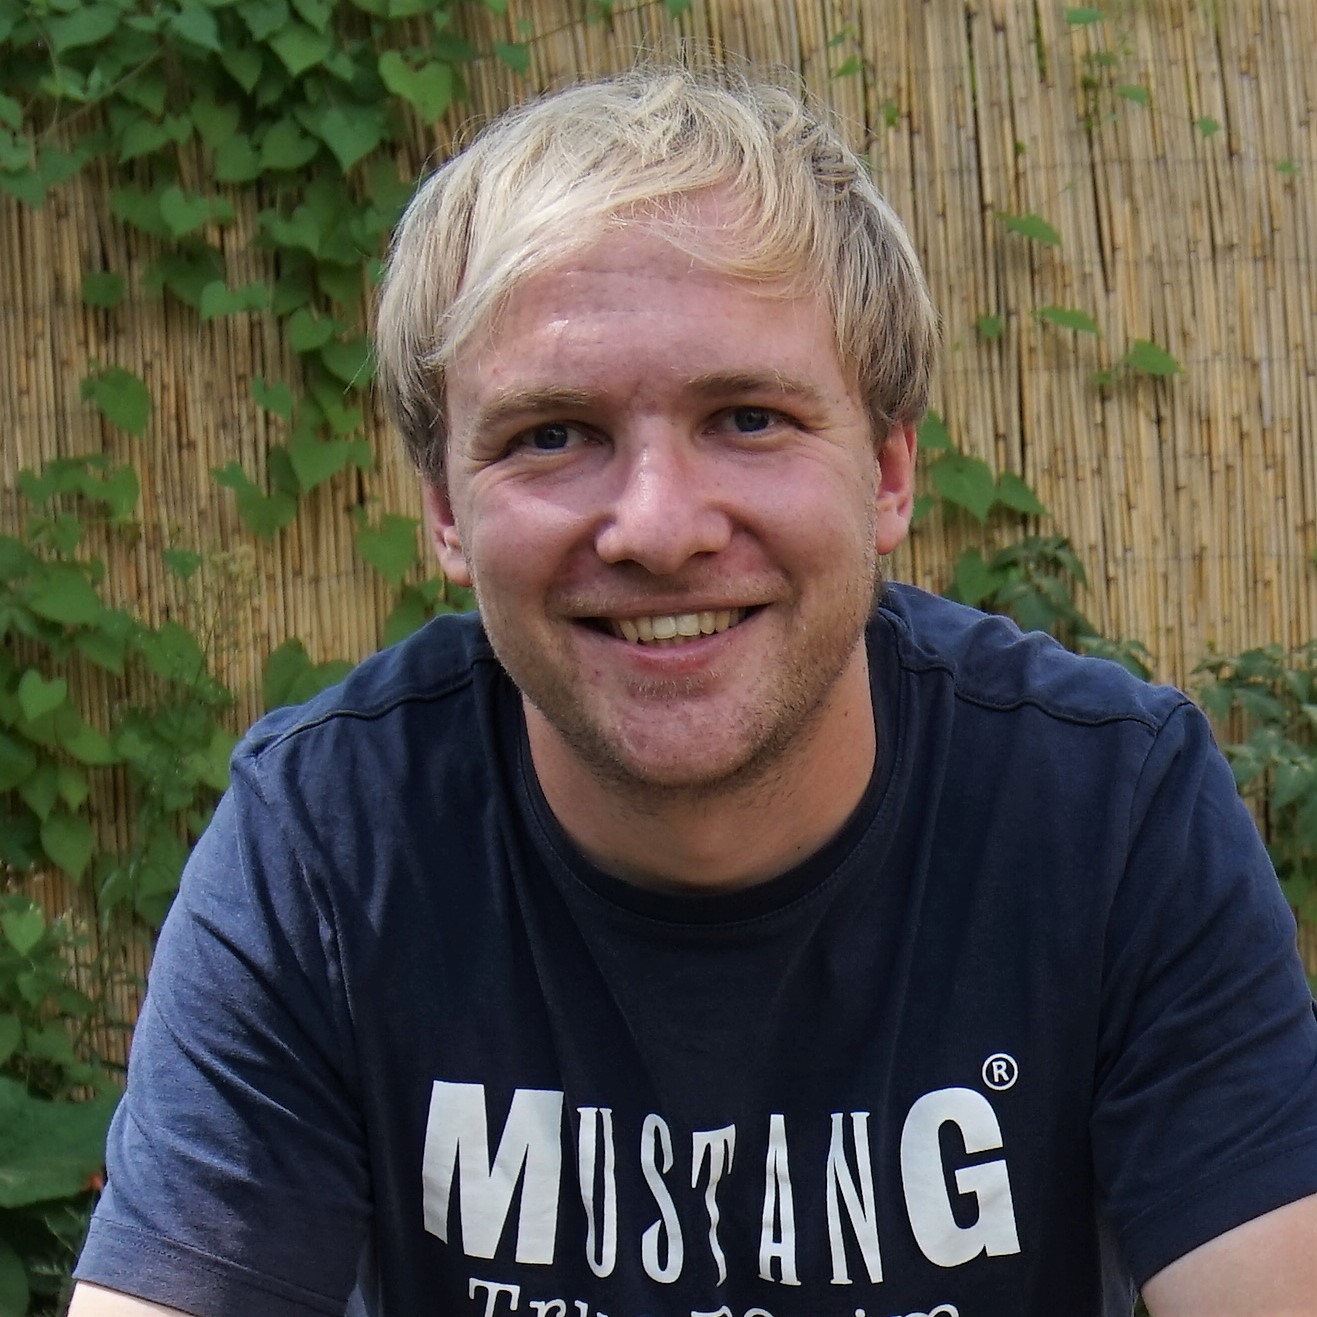 Ein junger Mann mit blonden Haaren sitzt vor einem Bambuszaun und blickt lächelnd in die Kamera